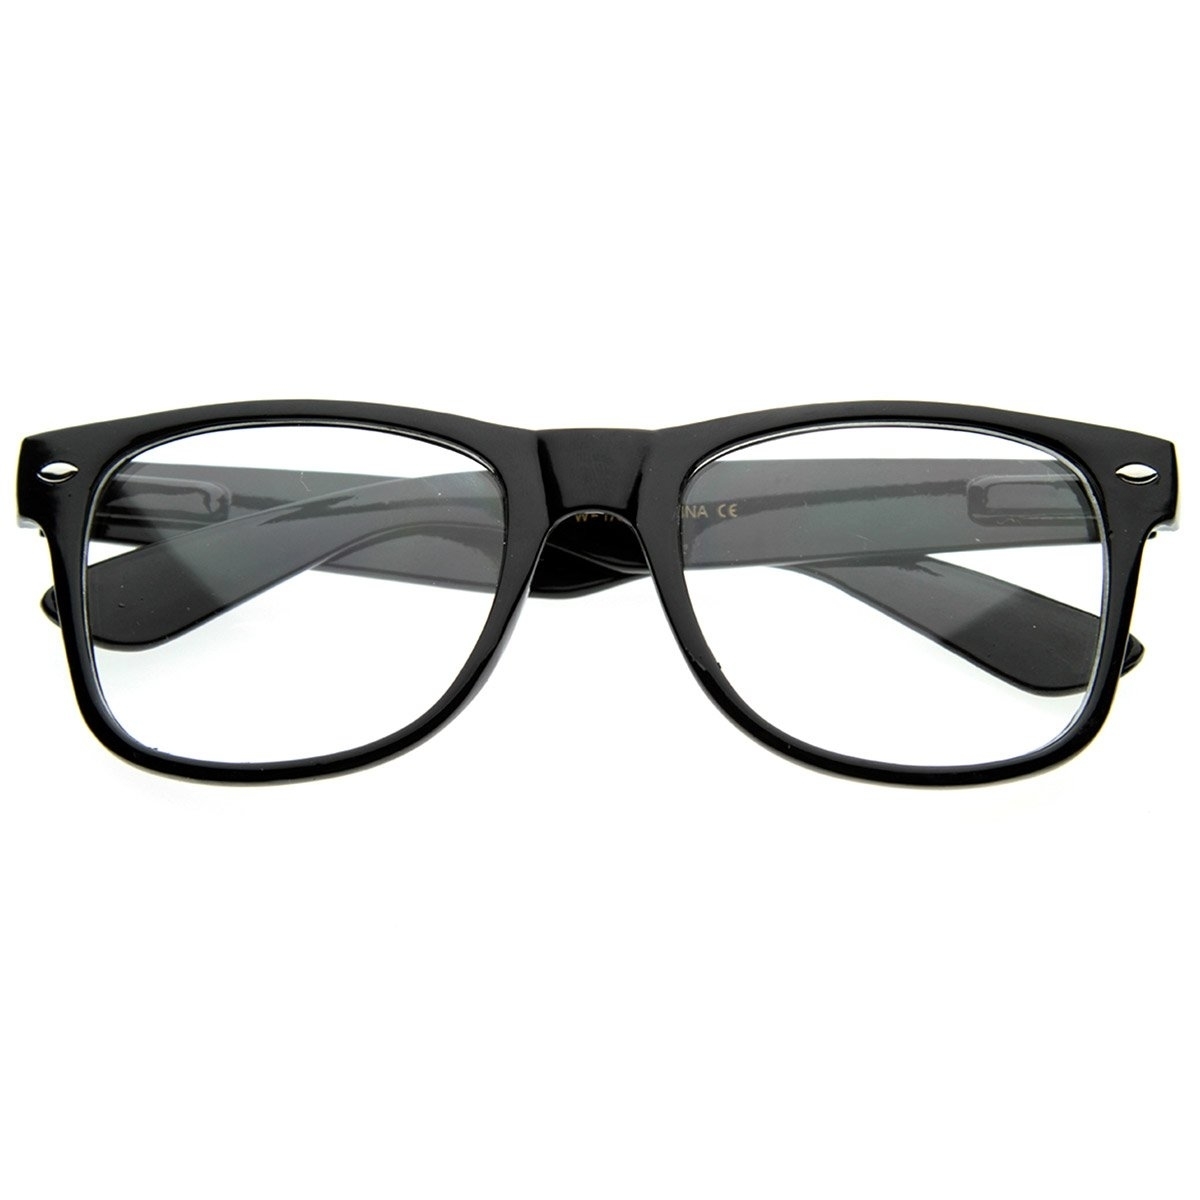 Standard Retro Clear Lens Nerd Geek Assorted Color Horn Rimmed Glasses - Tortoise Shell